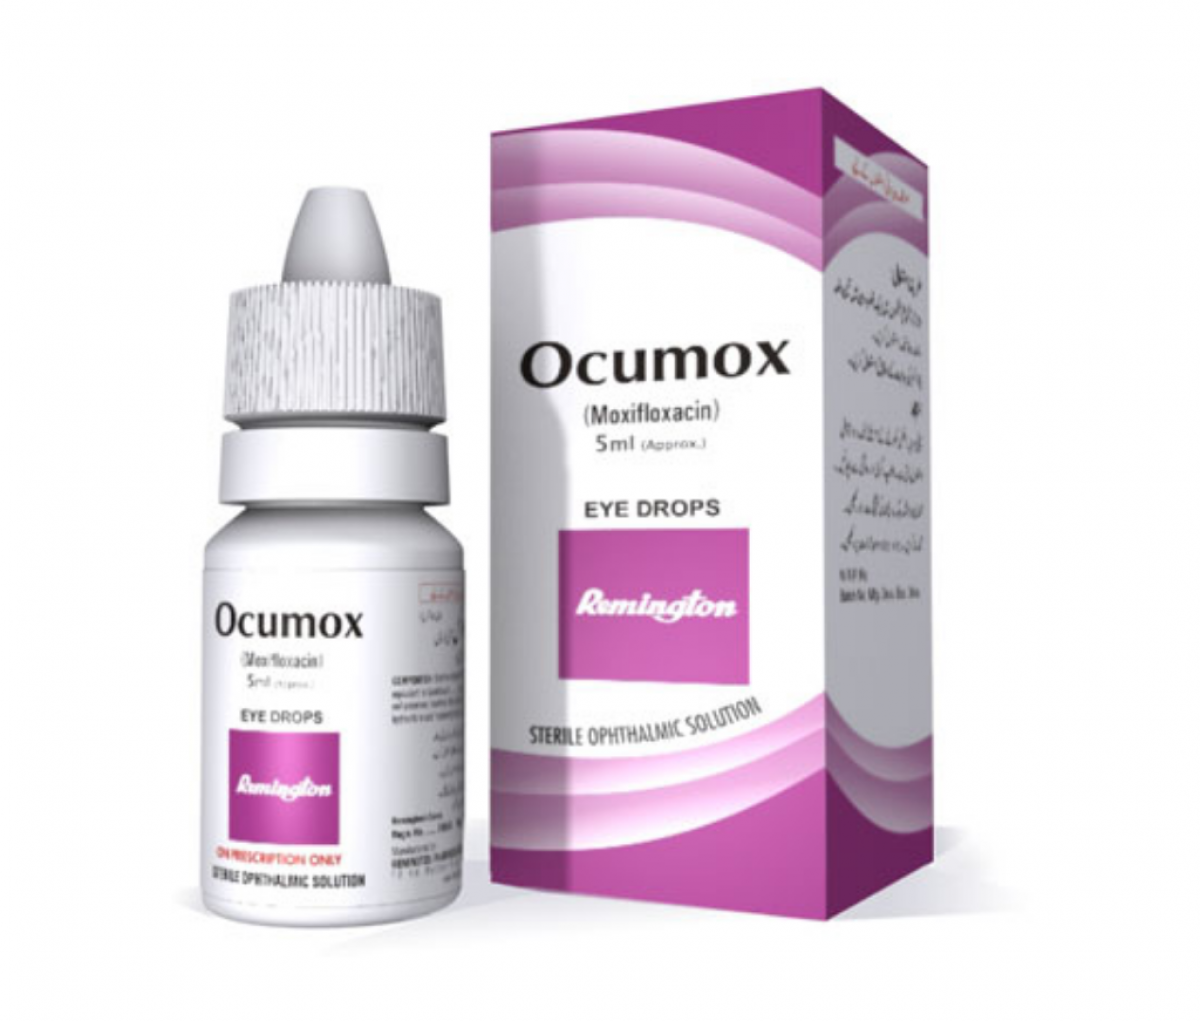 Ocumox 0.5% Eye Ointment